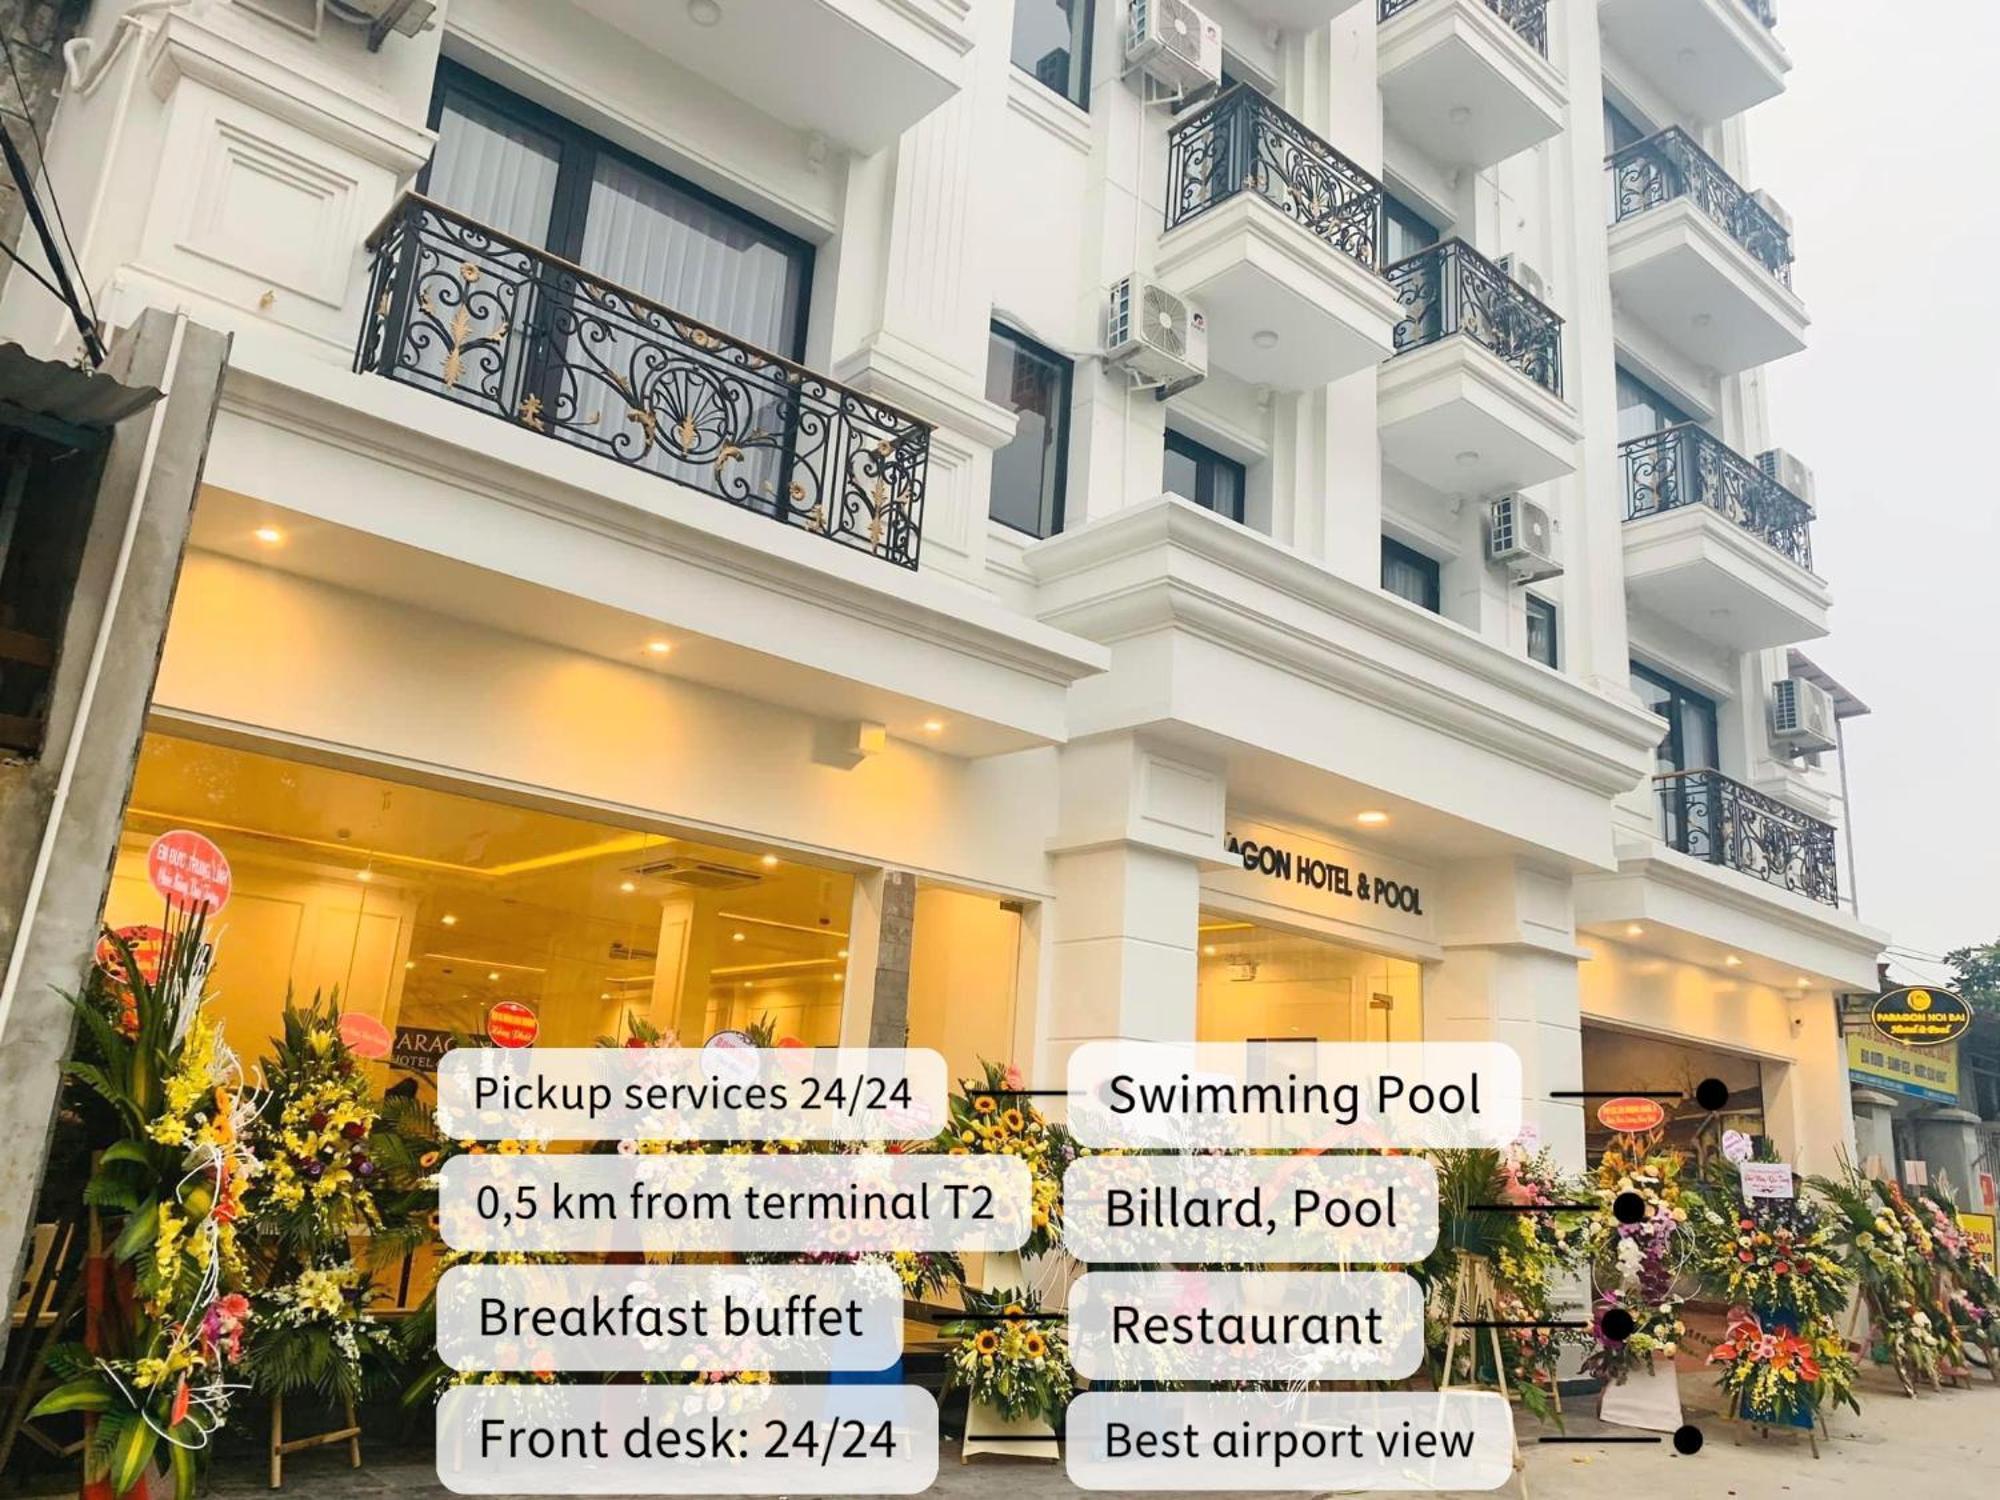 Paragon Noi Bai Hotel & Pool Hanoi Exterior foto